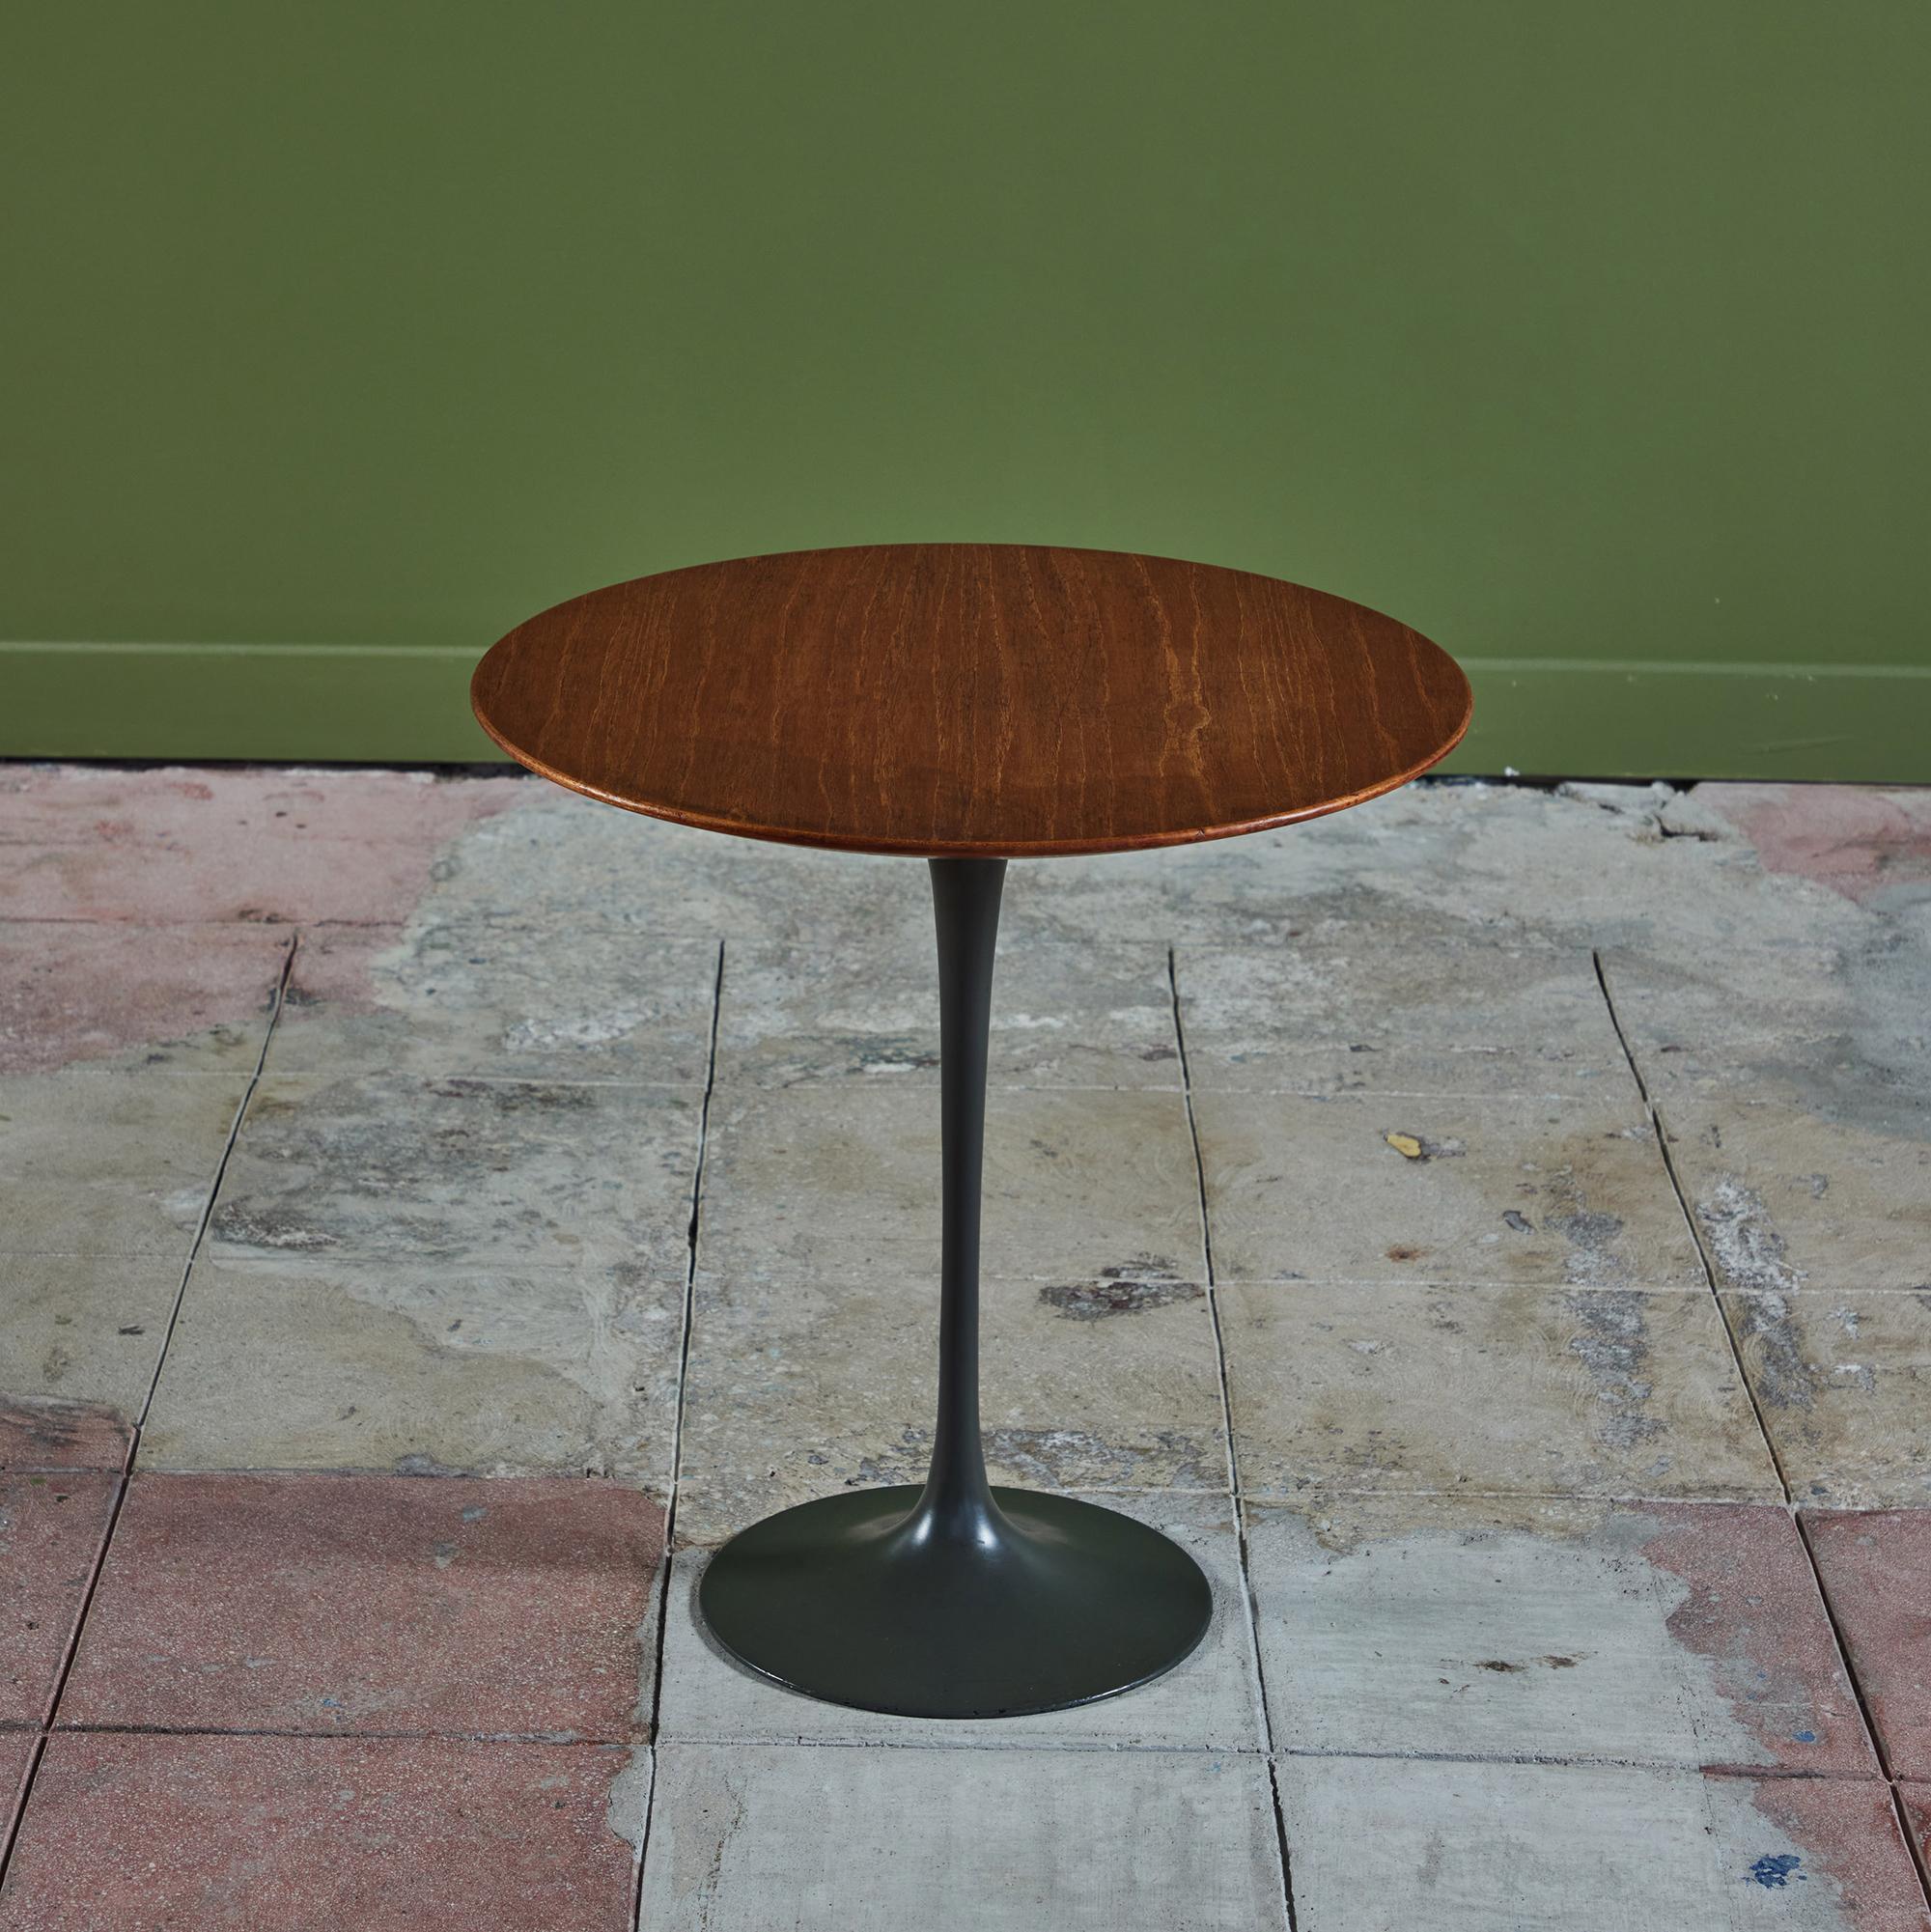 Cette table d'appoint, qui fait partie de la Collection Pedestal et a été conçue en 1957, est l'une des créations les plus durables de Saarinen. Elle se compose d'une base en fonte d'aluminium lourdement moulée et émaillée en vert forêt et d'un